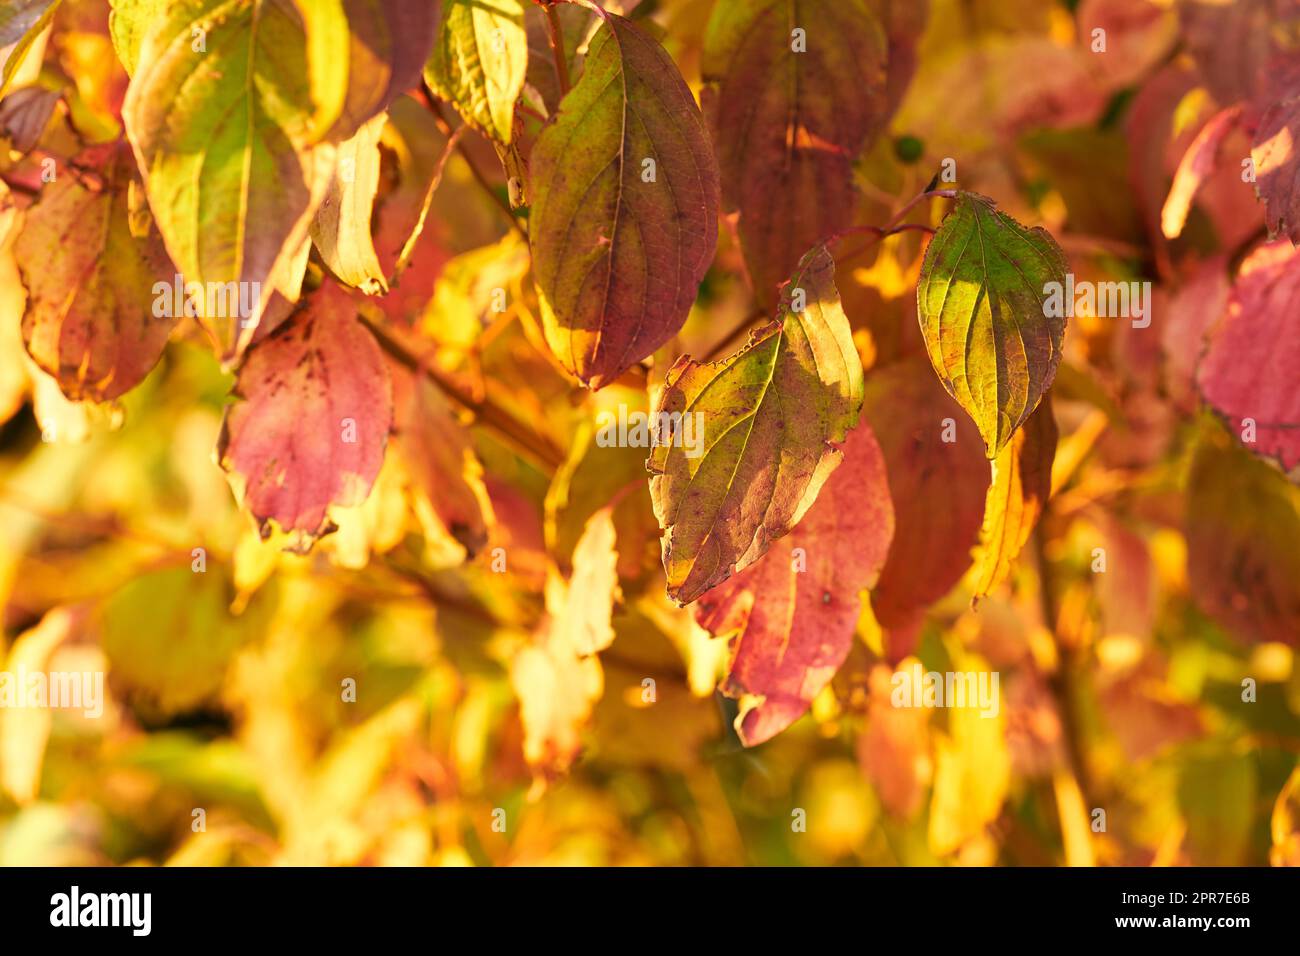 An einem sonnigen Nachmittag im Wald erstrahlt der helle und lebhafte Herbst. Nahaufnahme eines goldgelben und orangefarbenen Baumes während der Herbstsaison in der Natur an einem sonnigen Tag Stockfoto